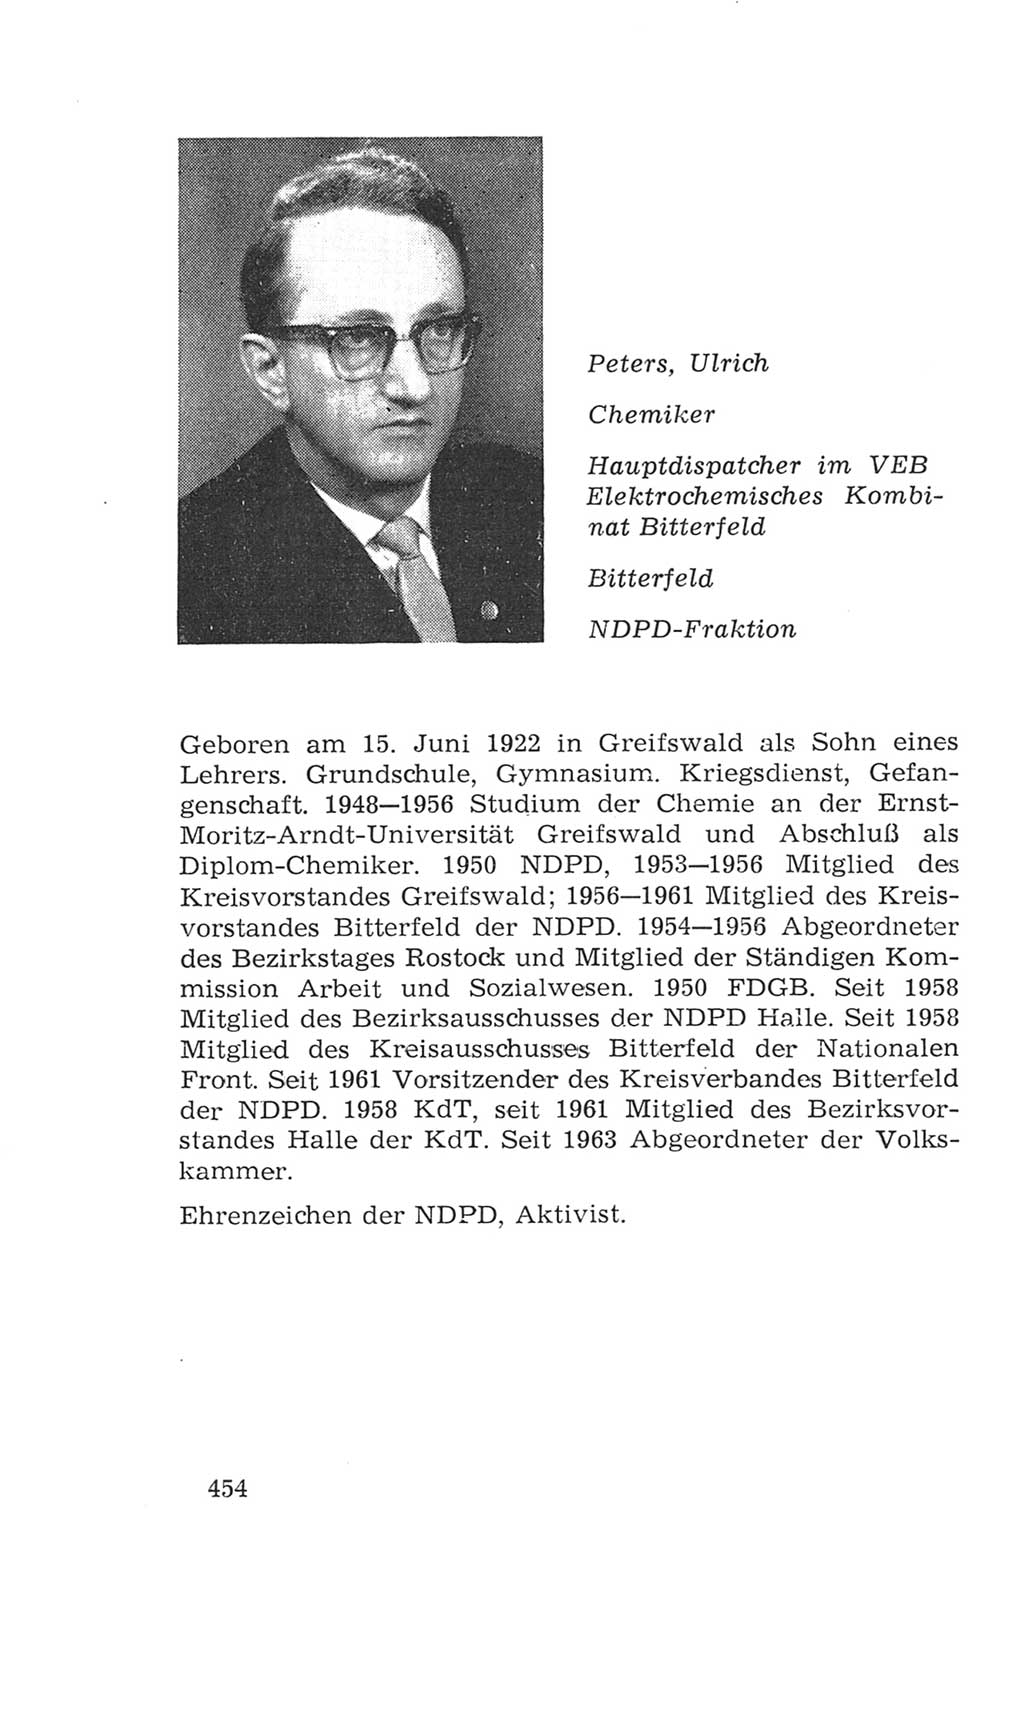 Volkskammer (VK) der Deutschen Demokratischen Republik (DDR), 4. Wahlperiode 1963-1967, Seite 454 (VK. DDR 4. WP. 1963-1967, S. 454)